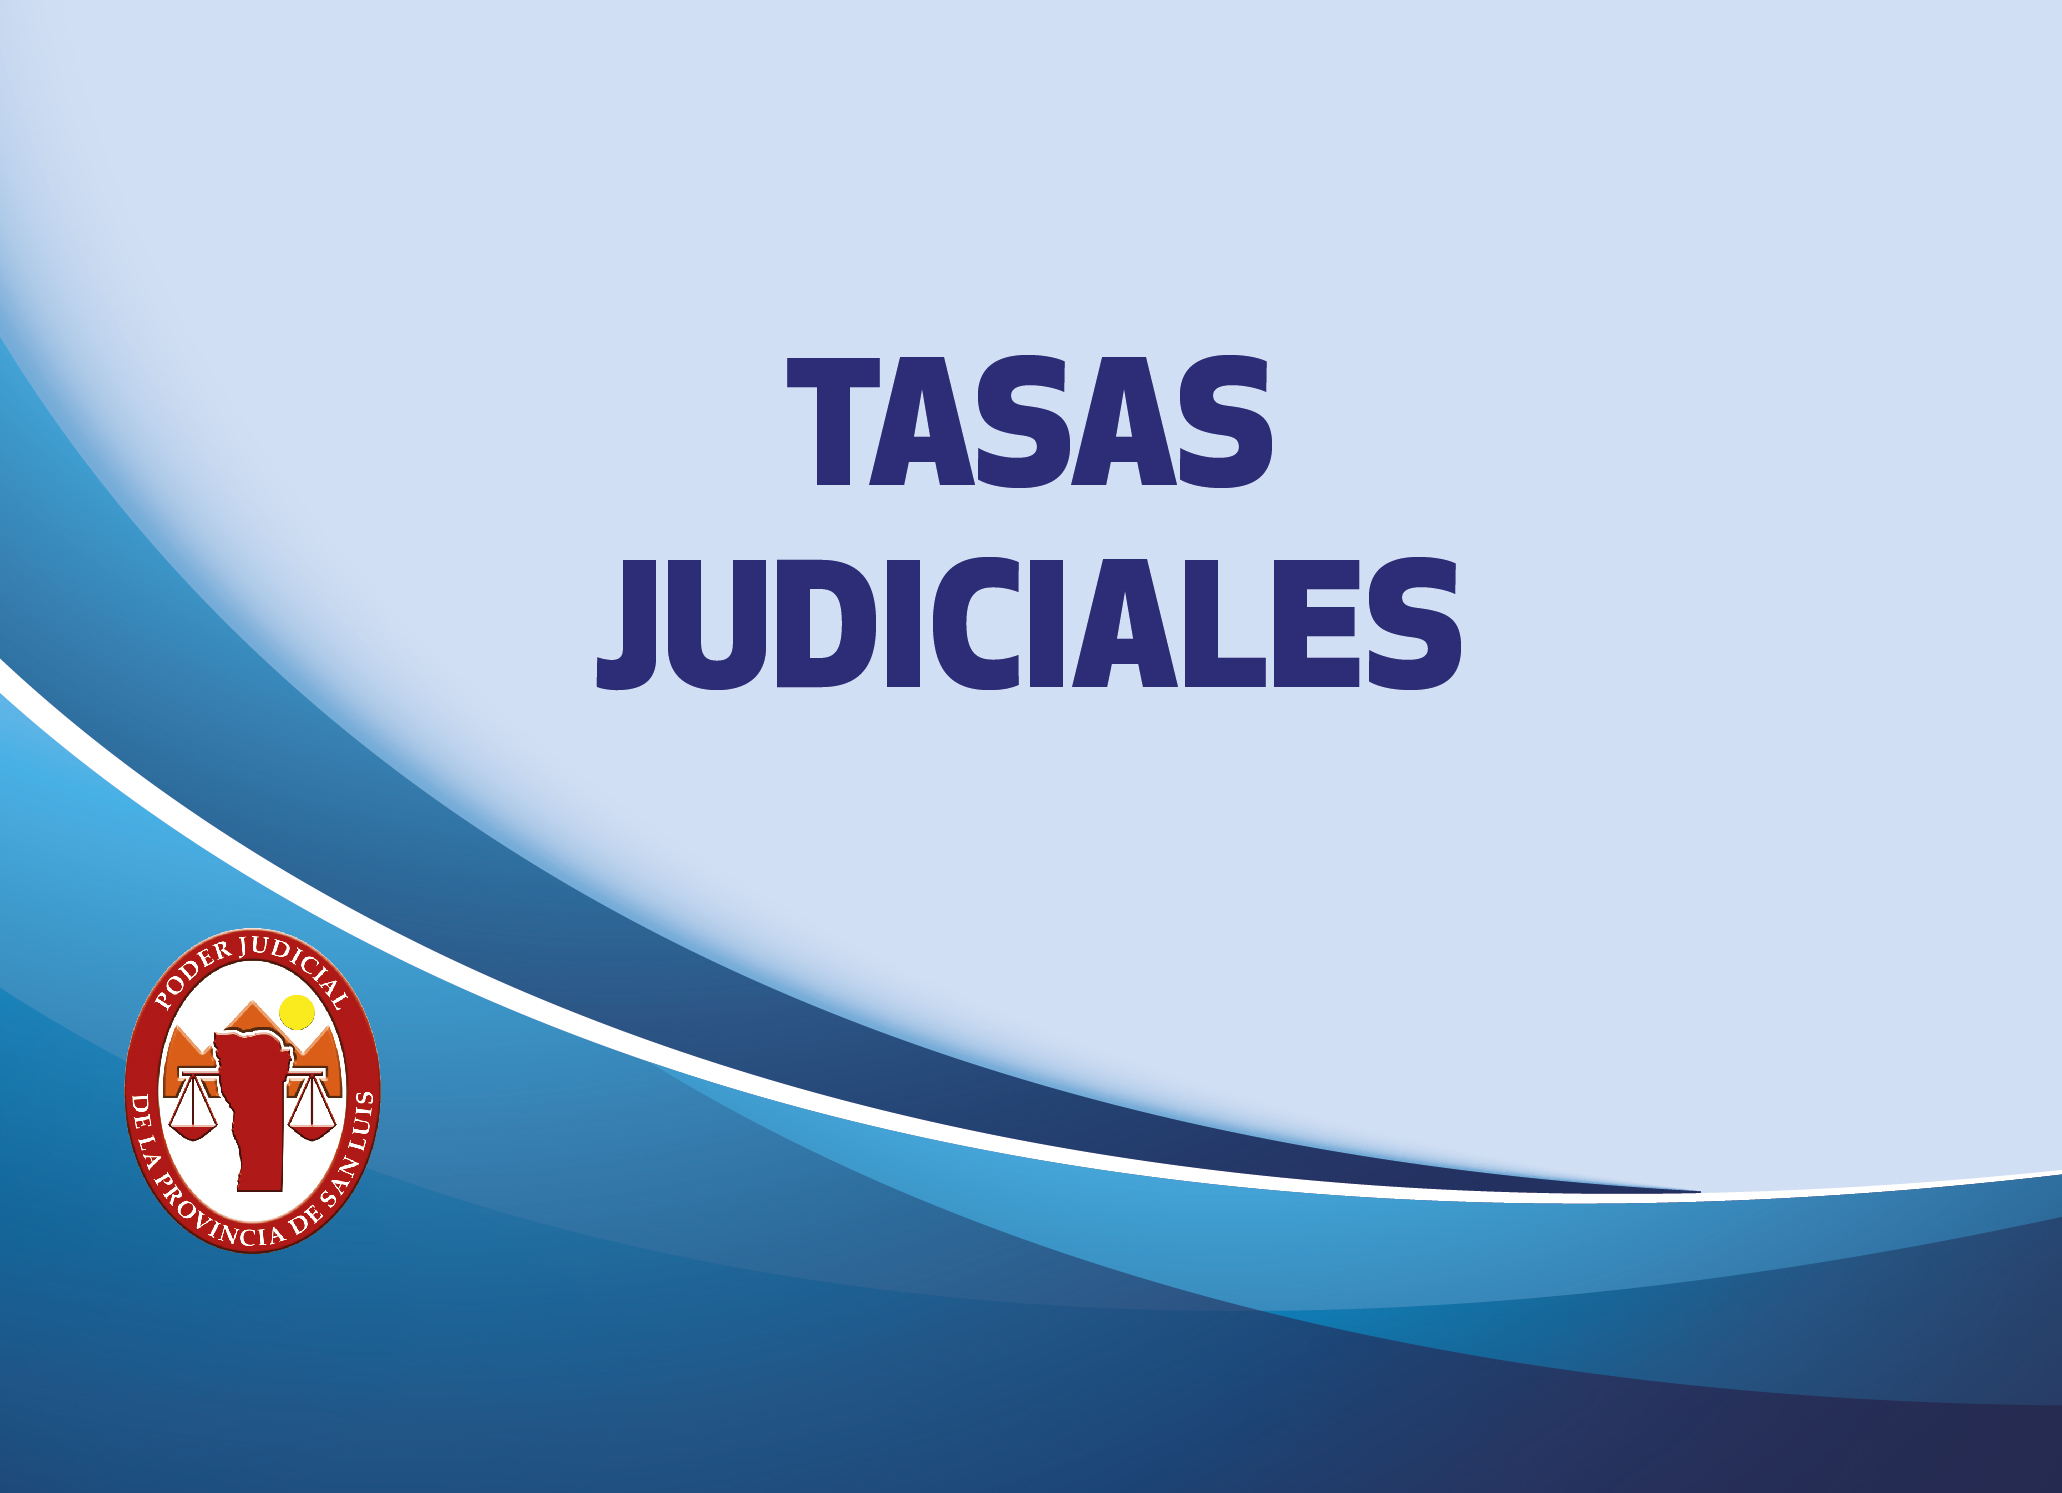 A PARTIR DEL 8 DE AGOSTO LA RECAUDACIÓN DE TASAS JUDICIALES SERÁ EXCLUSIVAMENTE POR BANCO NACIÓN